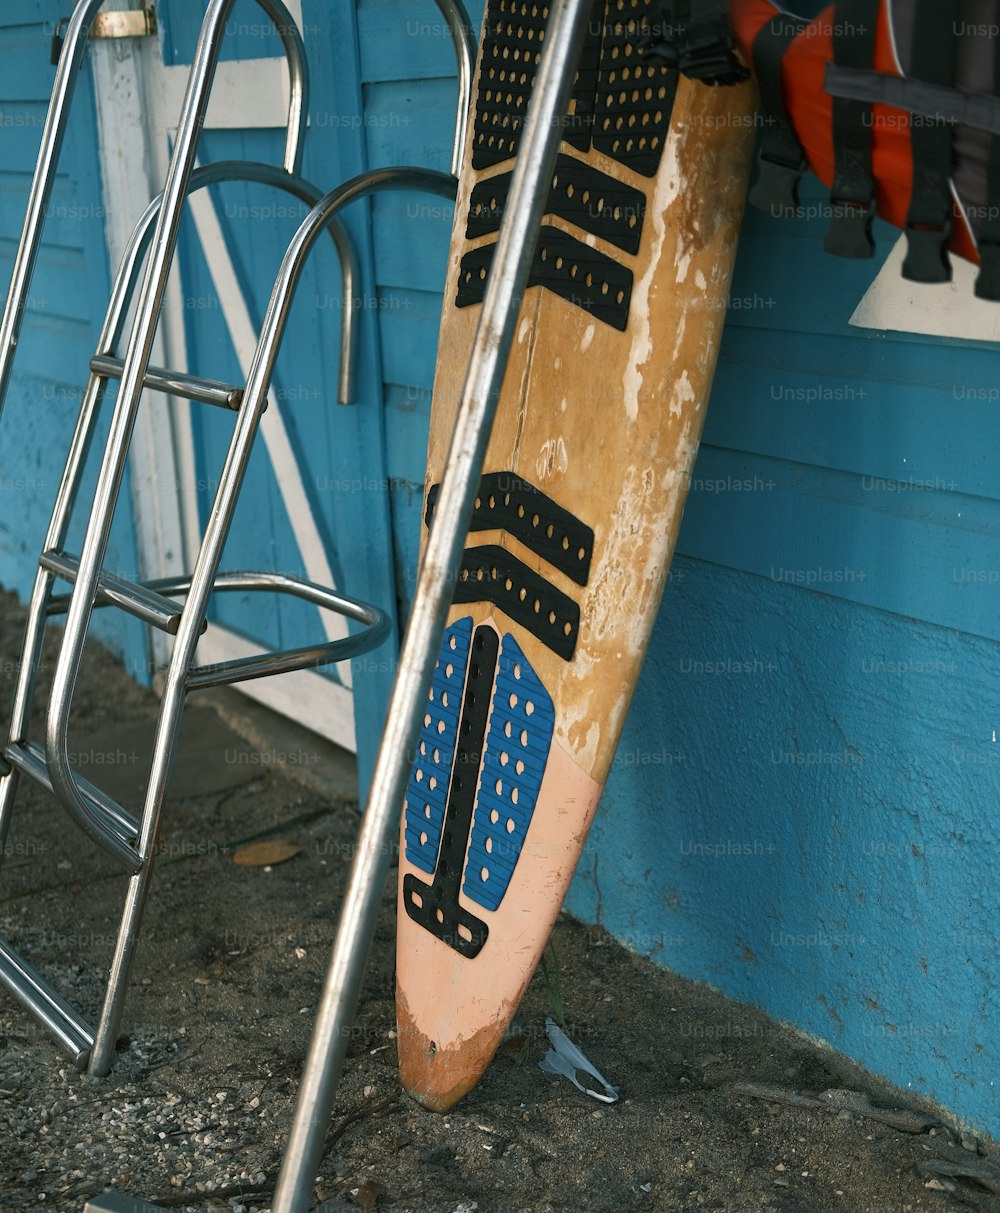 une paire de planches de surf appuyées contre un mur bleu